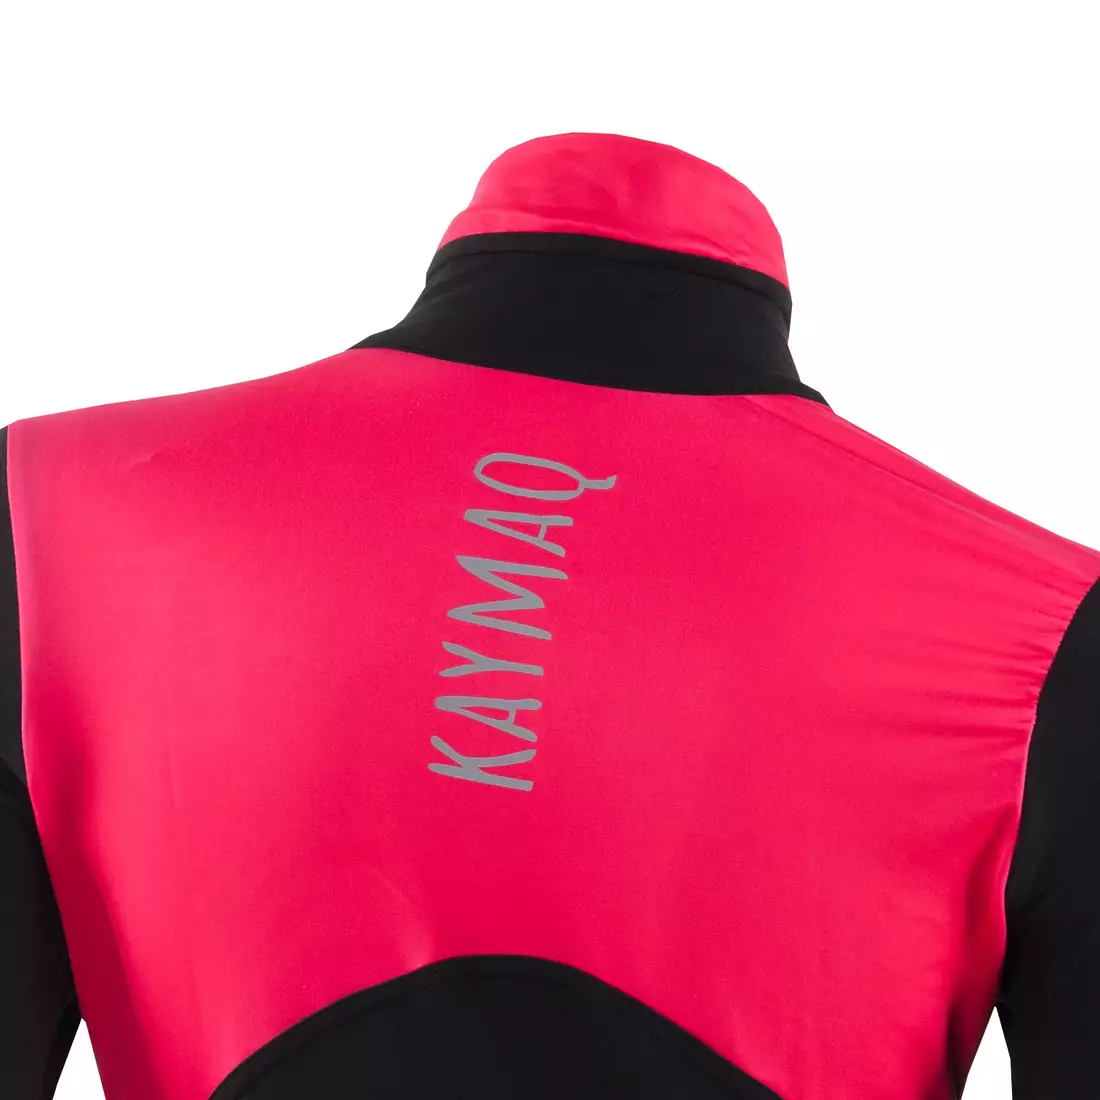 KAYMAQ KYQLSW-100 női kerékpáros mez fekete-rózsaszín